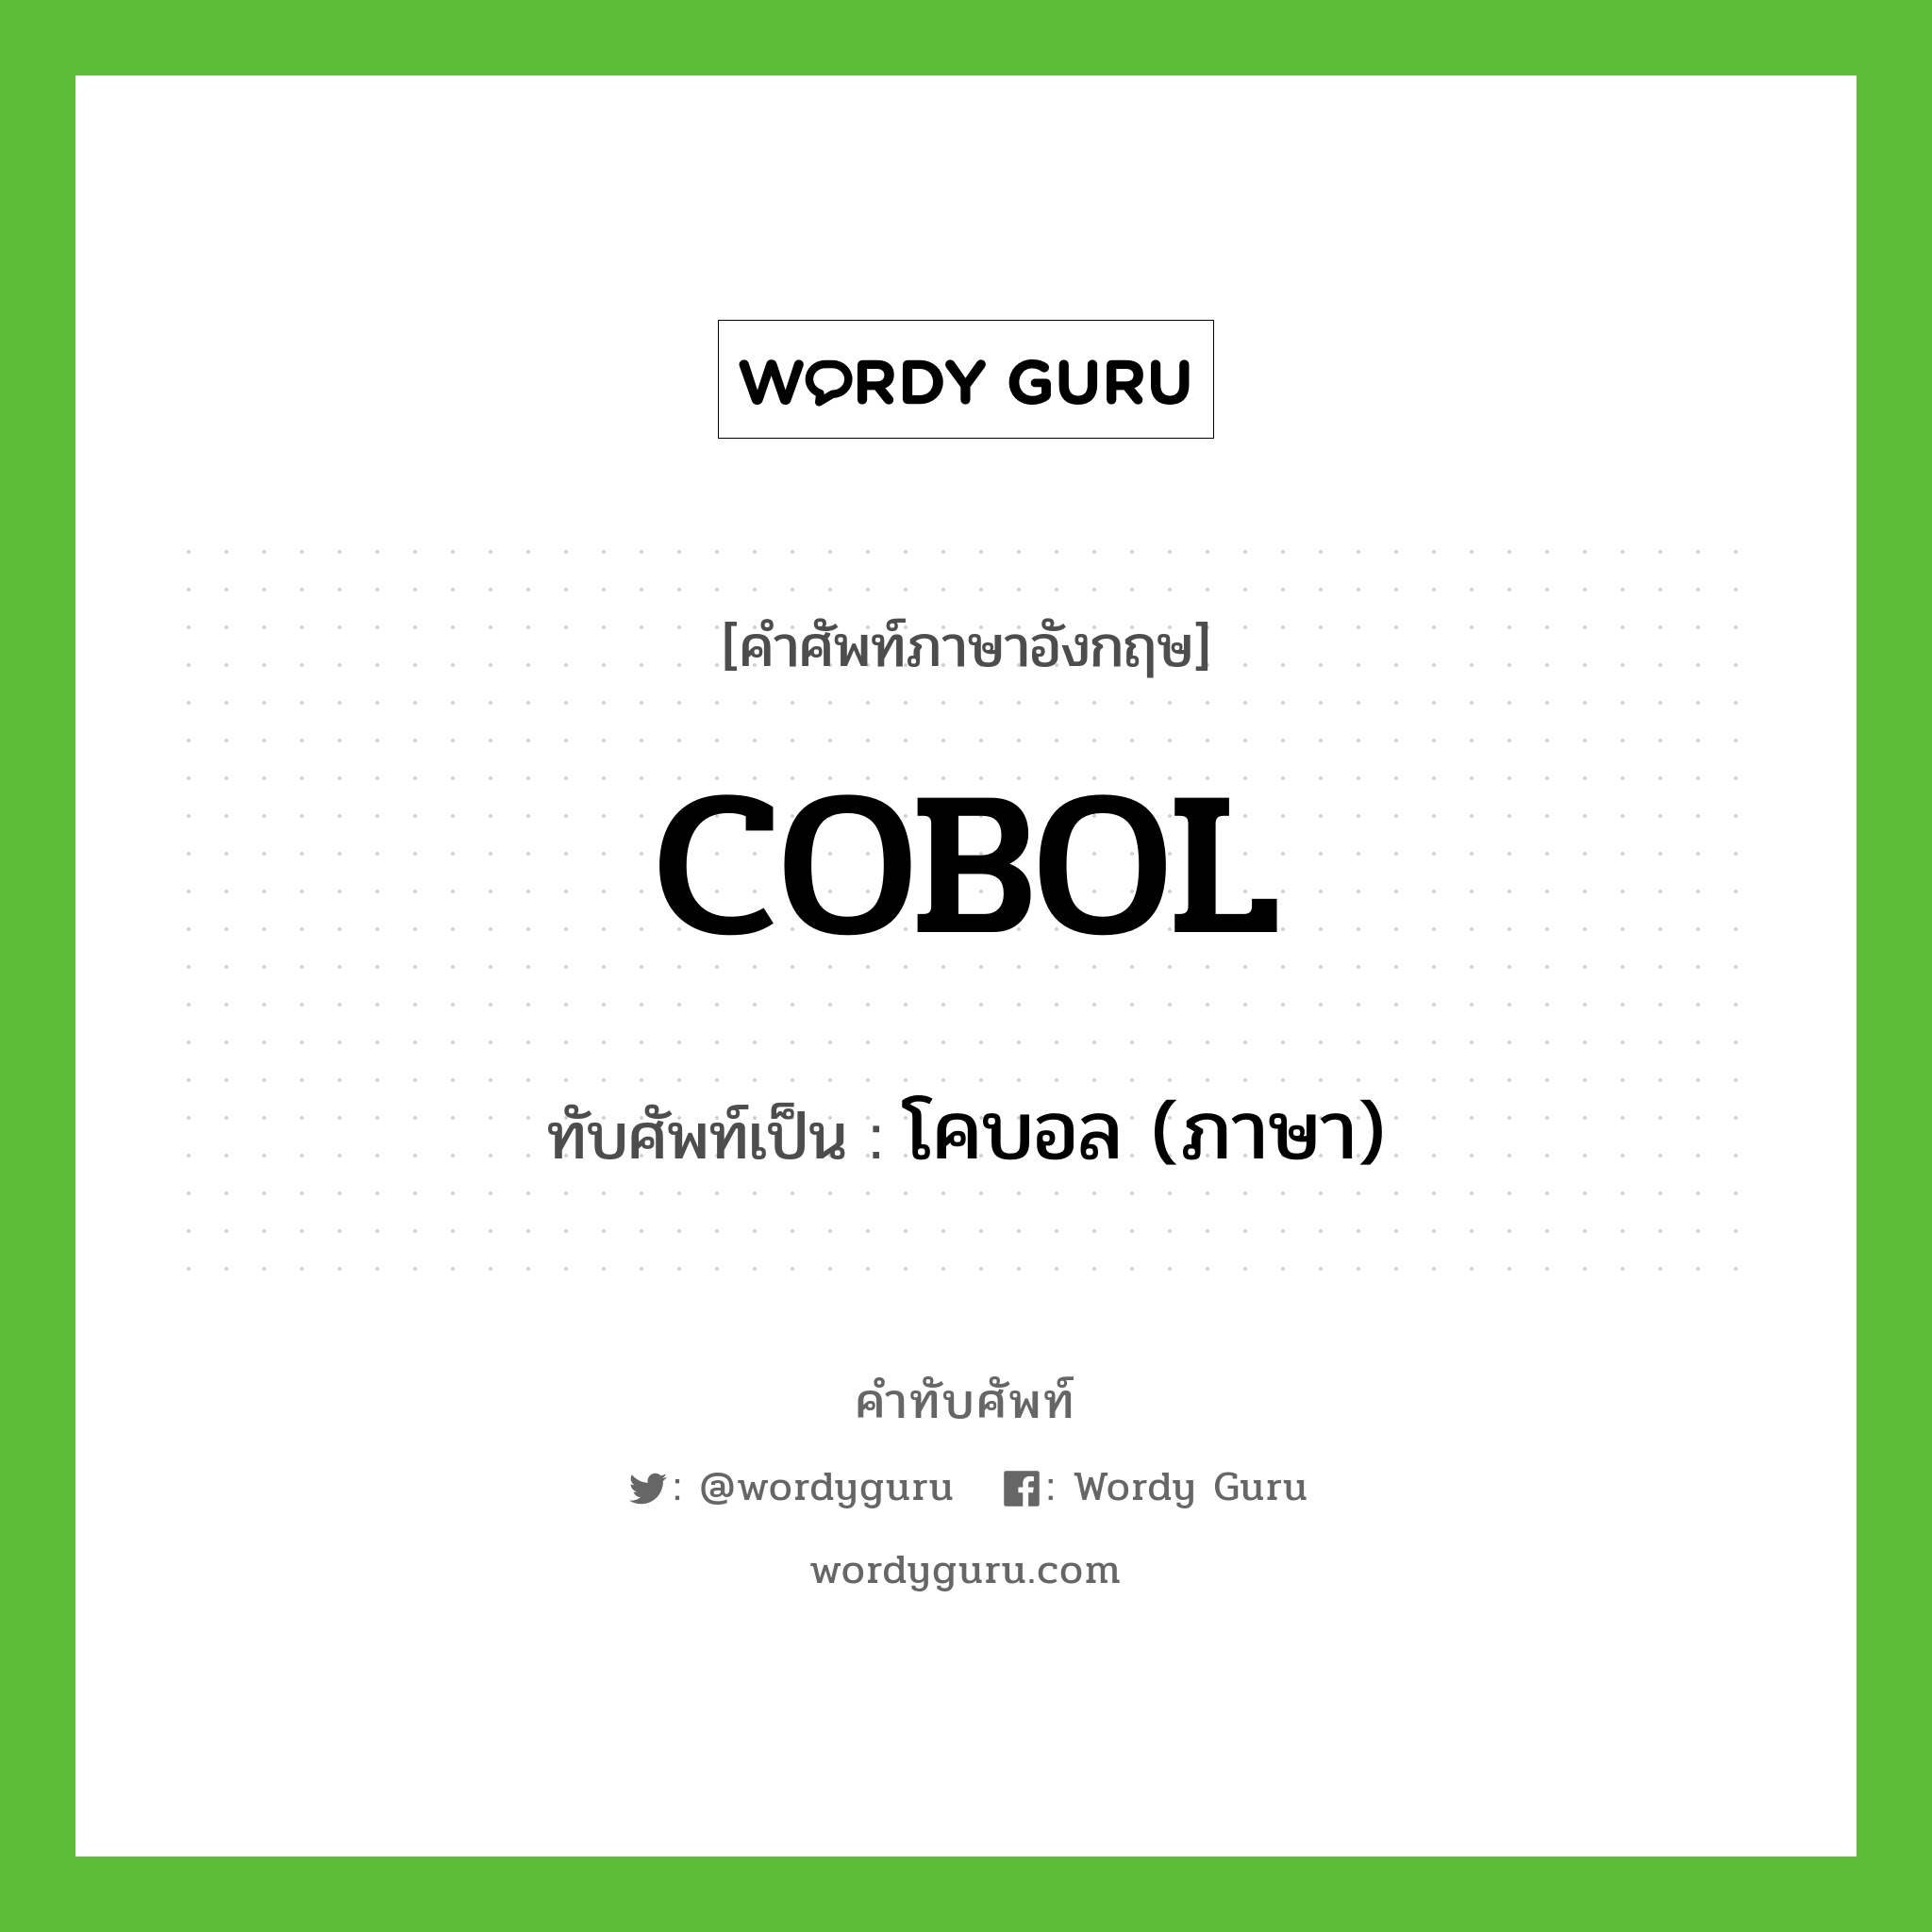 COBOL เขียนเป็นคำไทยว่าอะไร?, คำศัพท์ภาษาอังกฤษ COBOL ทับศัพท์เป็น โคบอล (ภาษา)